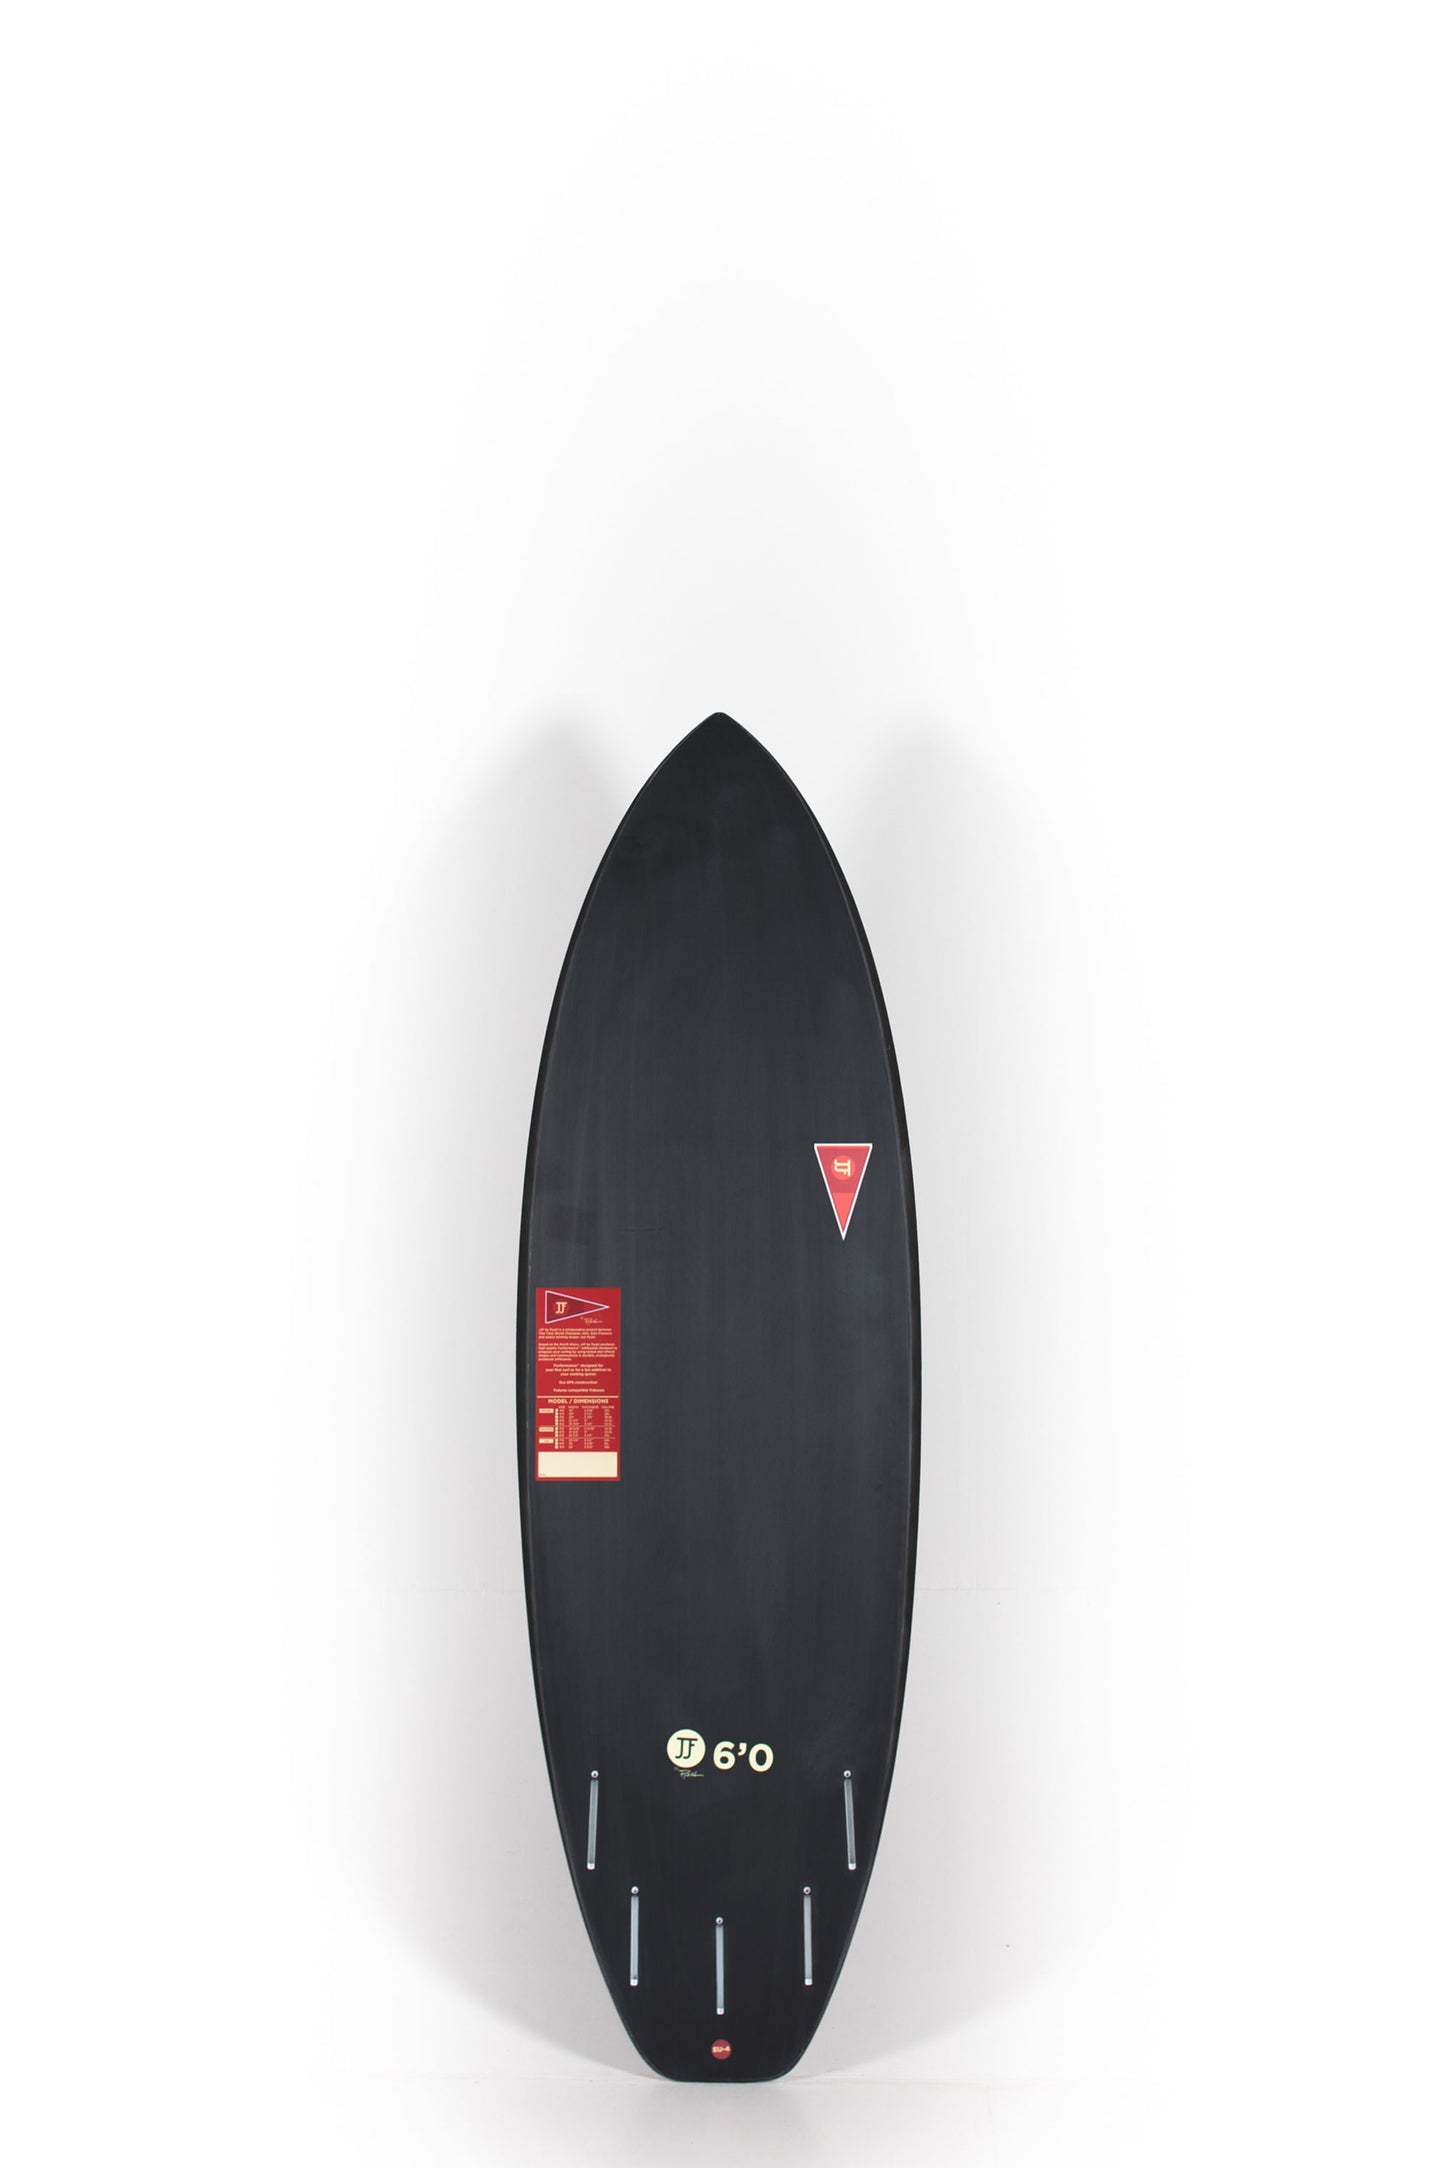 Pukas Surf Shop - JJF SURFBOARD - GREMLIN 6.0 BLACK